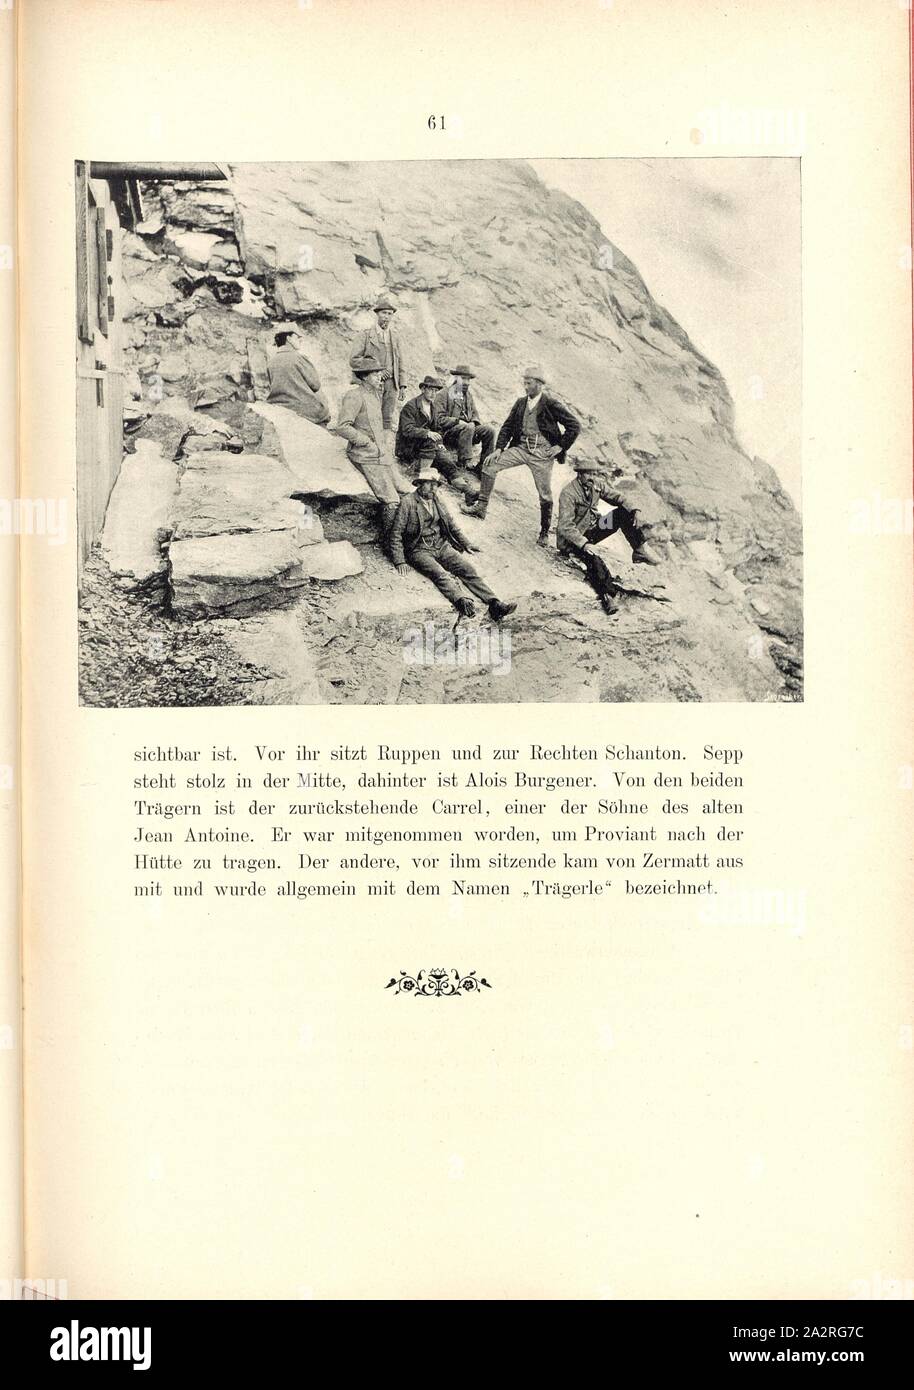 Mountaineer 3, Mountaineering group on the Matterhorn, signed: Schreiber, Fig. 39, p. 61, Schreiber, Eberhard (Autotypie), Theodor Wundt: Das Matterhorn und seine Geschichte. Berlin: Raimund Mitscher, [1896 Stock Photo